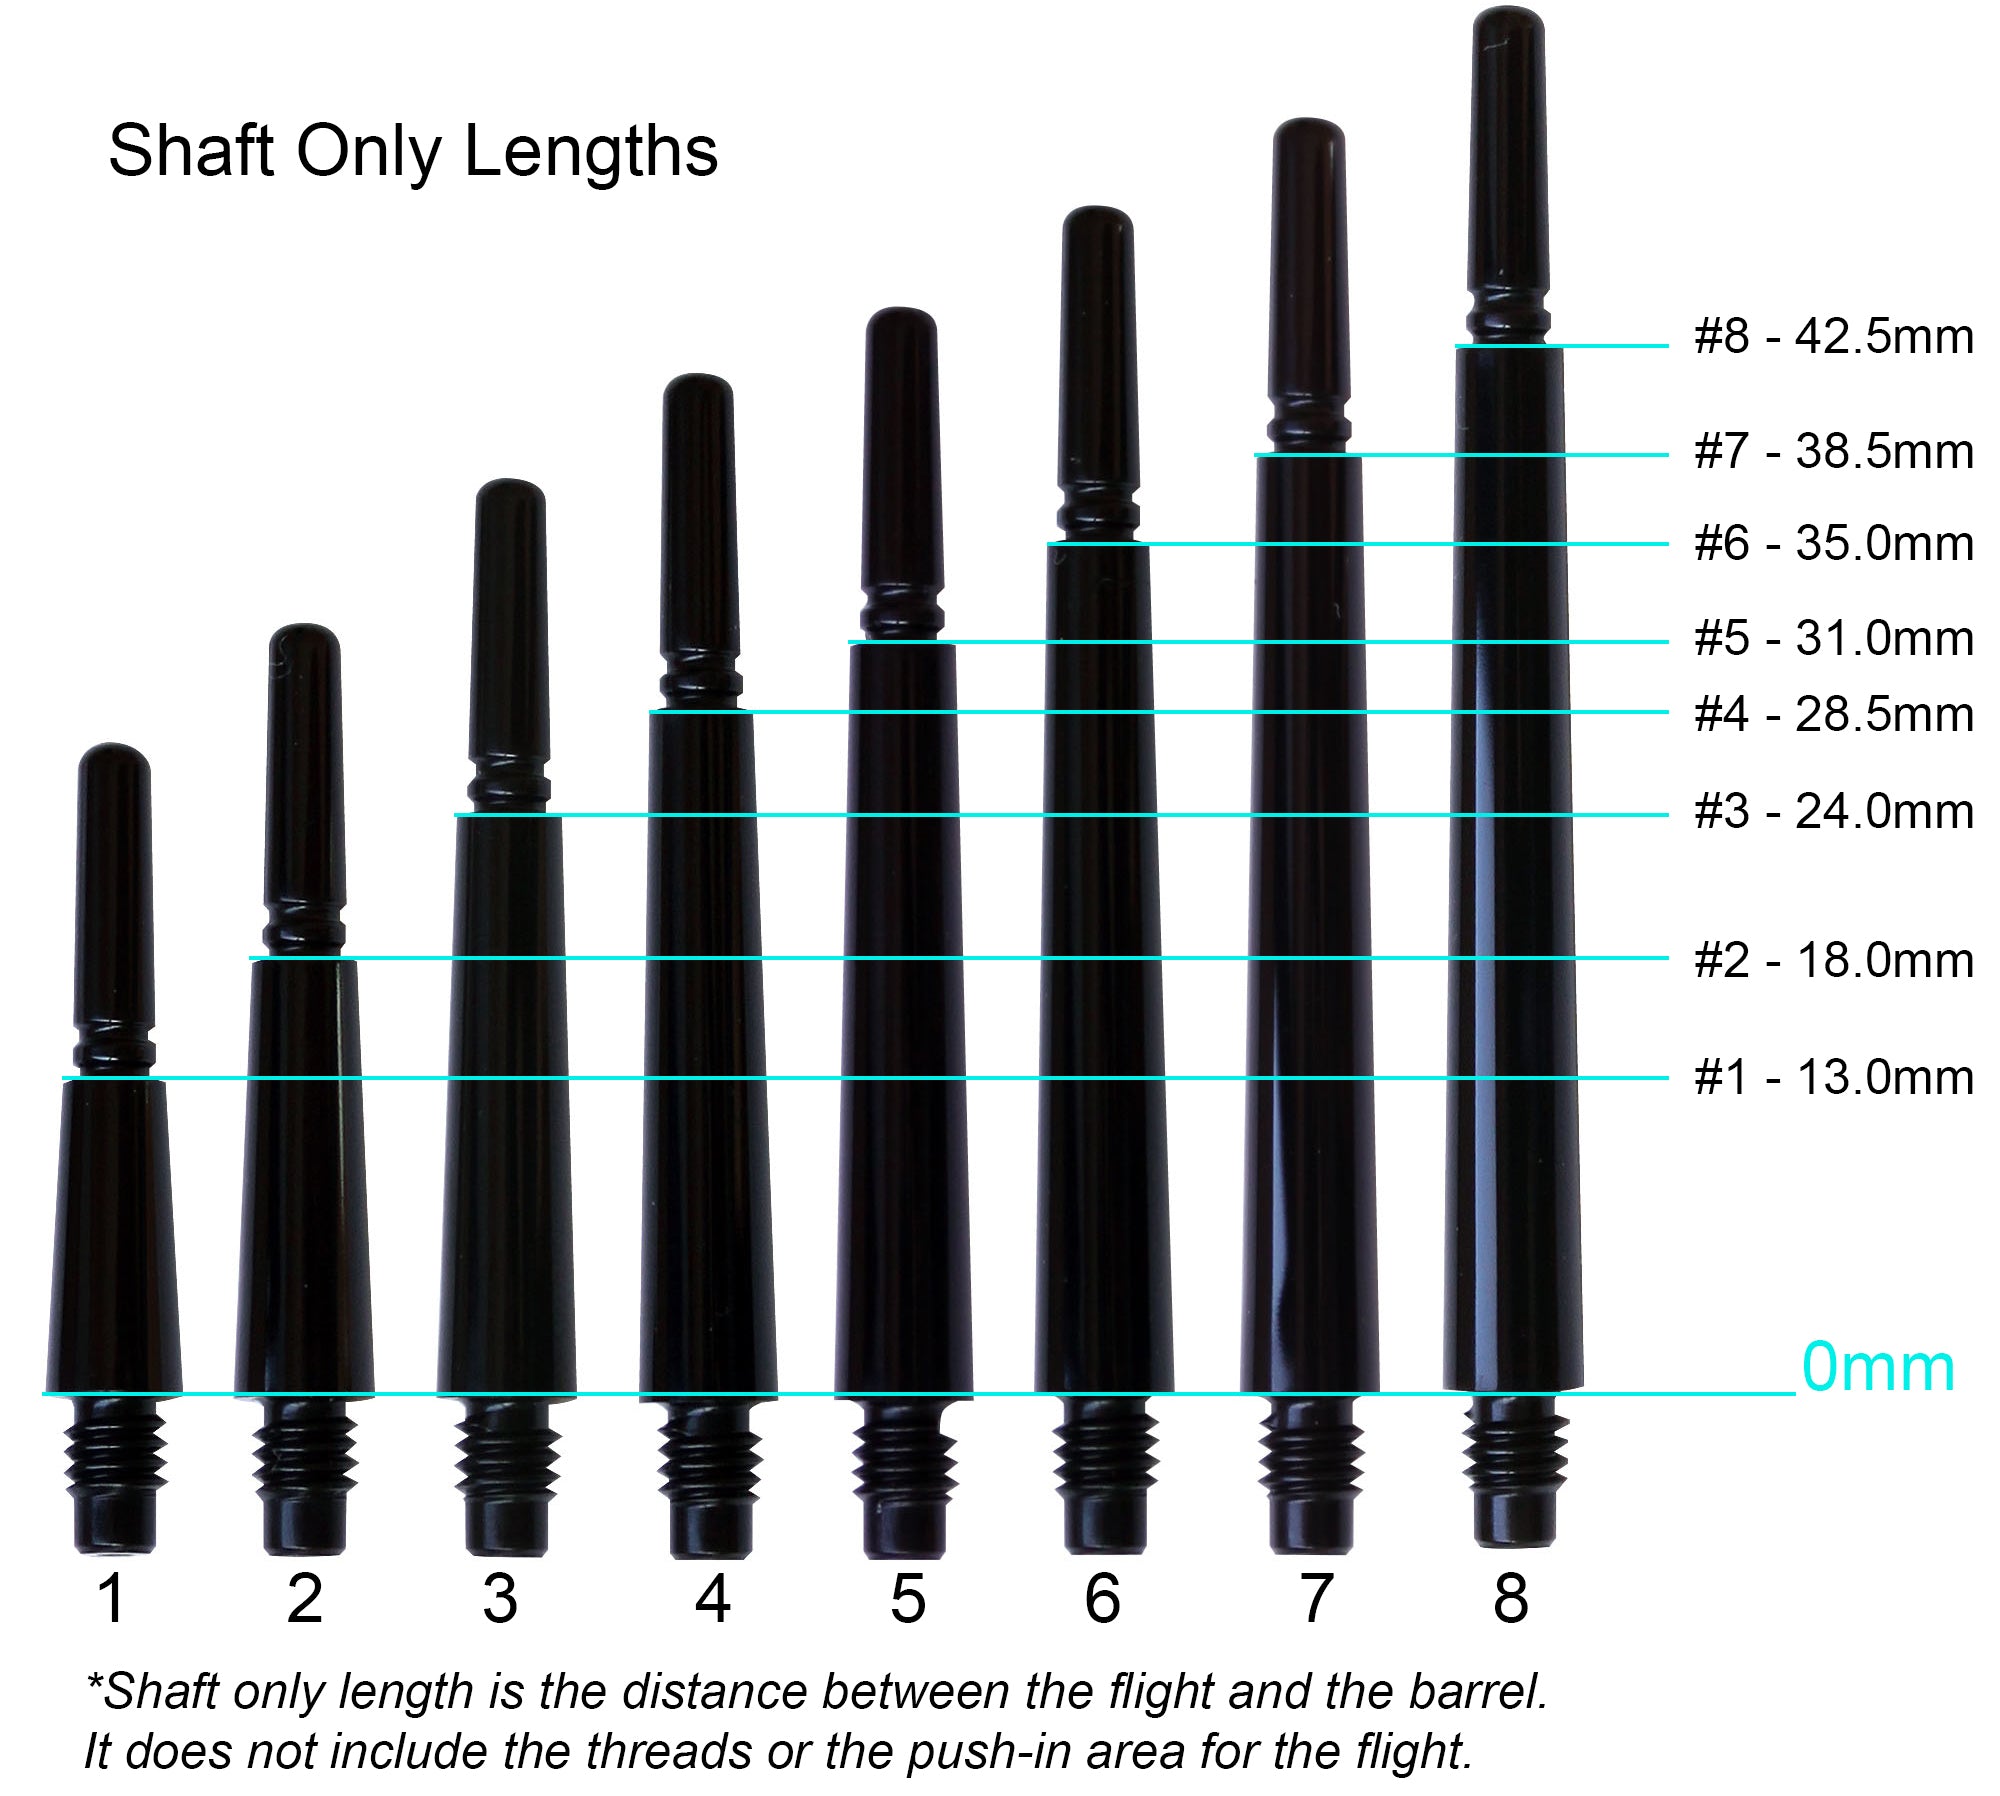 Fit Flight Gear Slim Spinning Dart Shafts - Medium #5 (31.0mm) Black